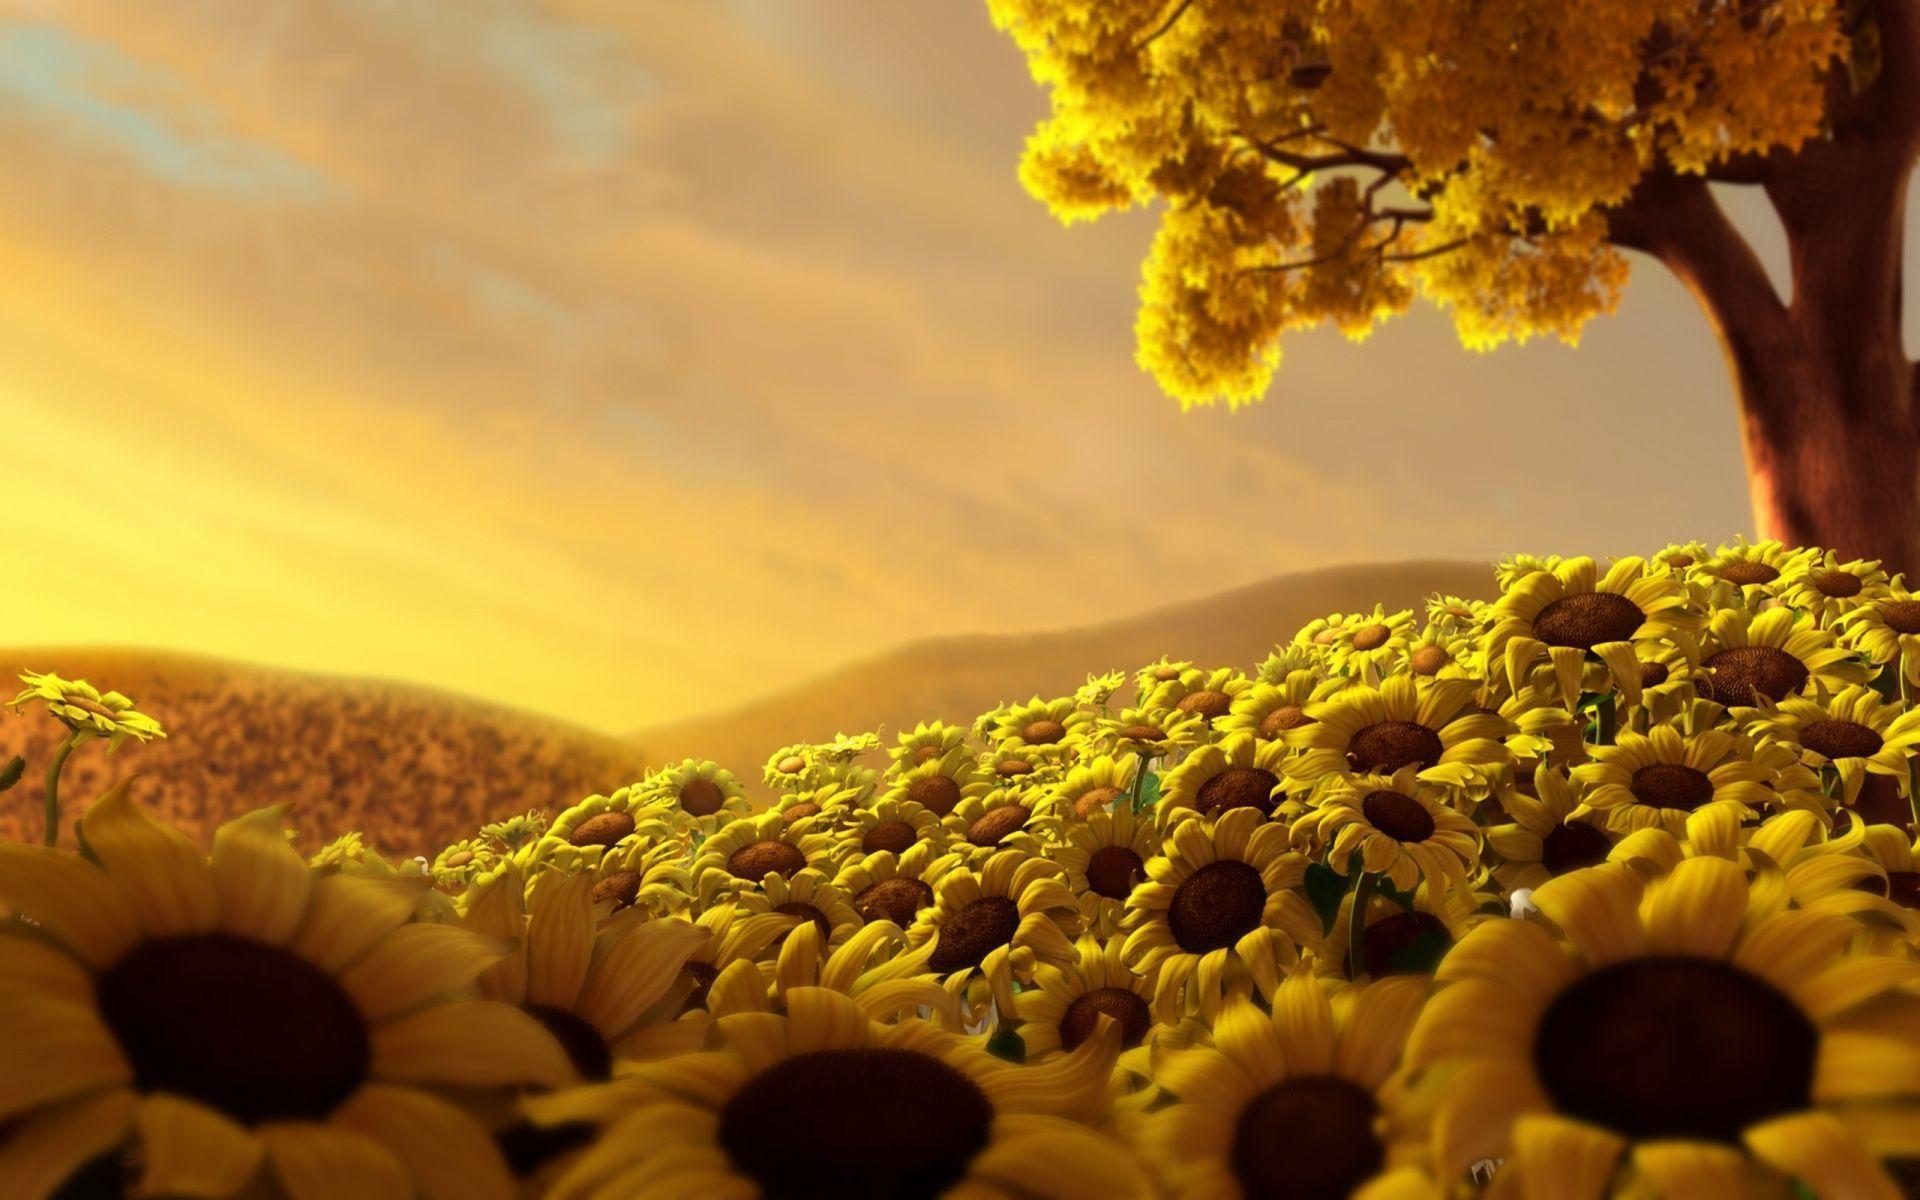 Hướng dương (Sunflowers): Với những bức hình về những luống hướng dương rực rỡ, chắc chắn bạn sẽ bị mê hoặc bởi sắc vàng rực rỡ của chúng. Hãy để những bức hình này giúp bạn thư giãn và tận hưởng vẻ đẹp của những bông hoa này.